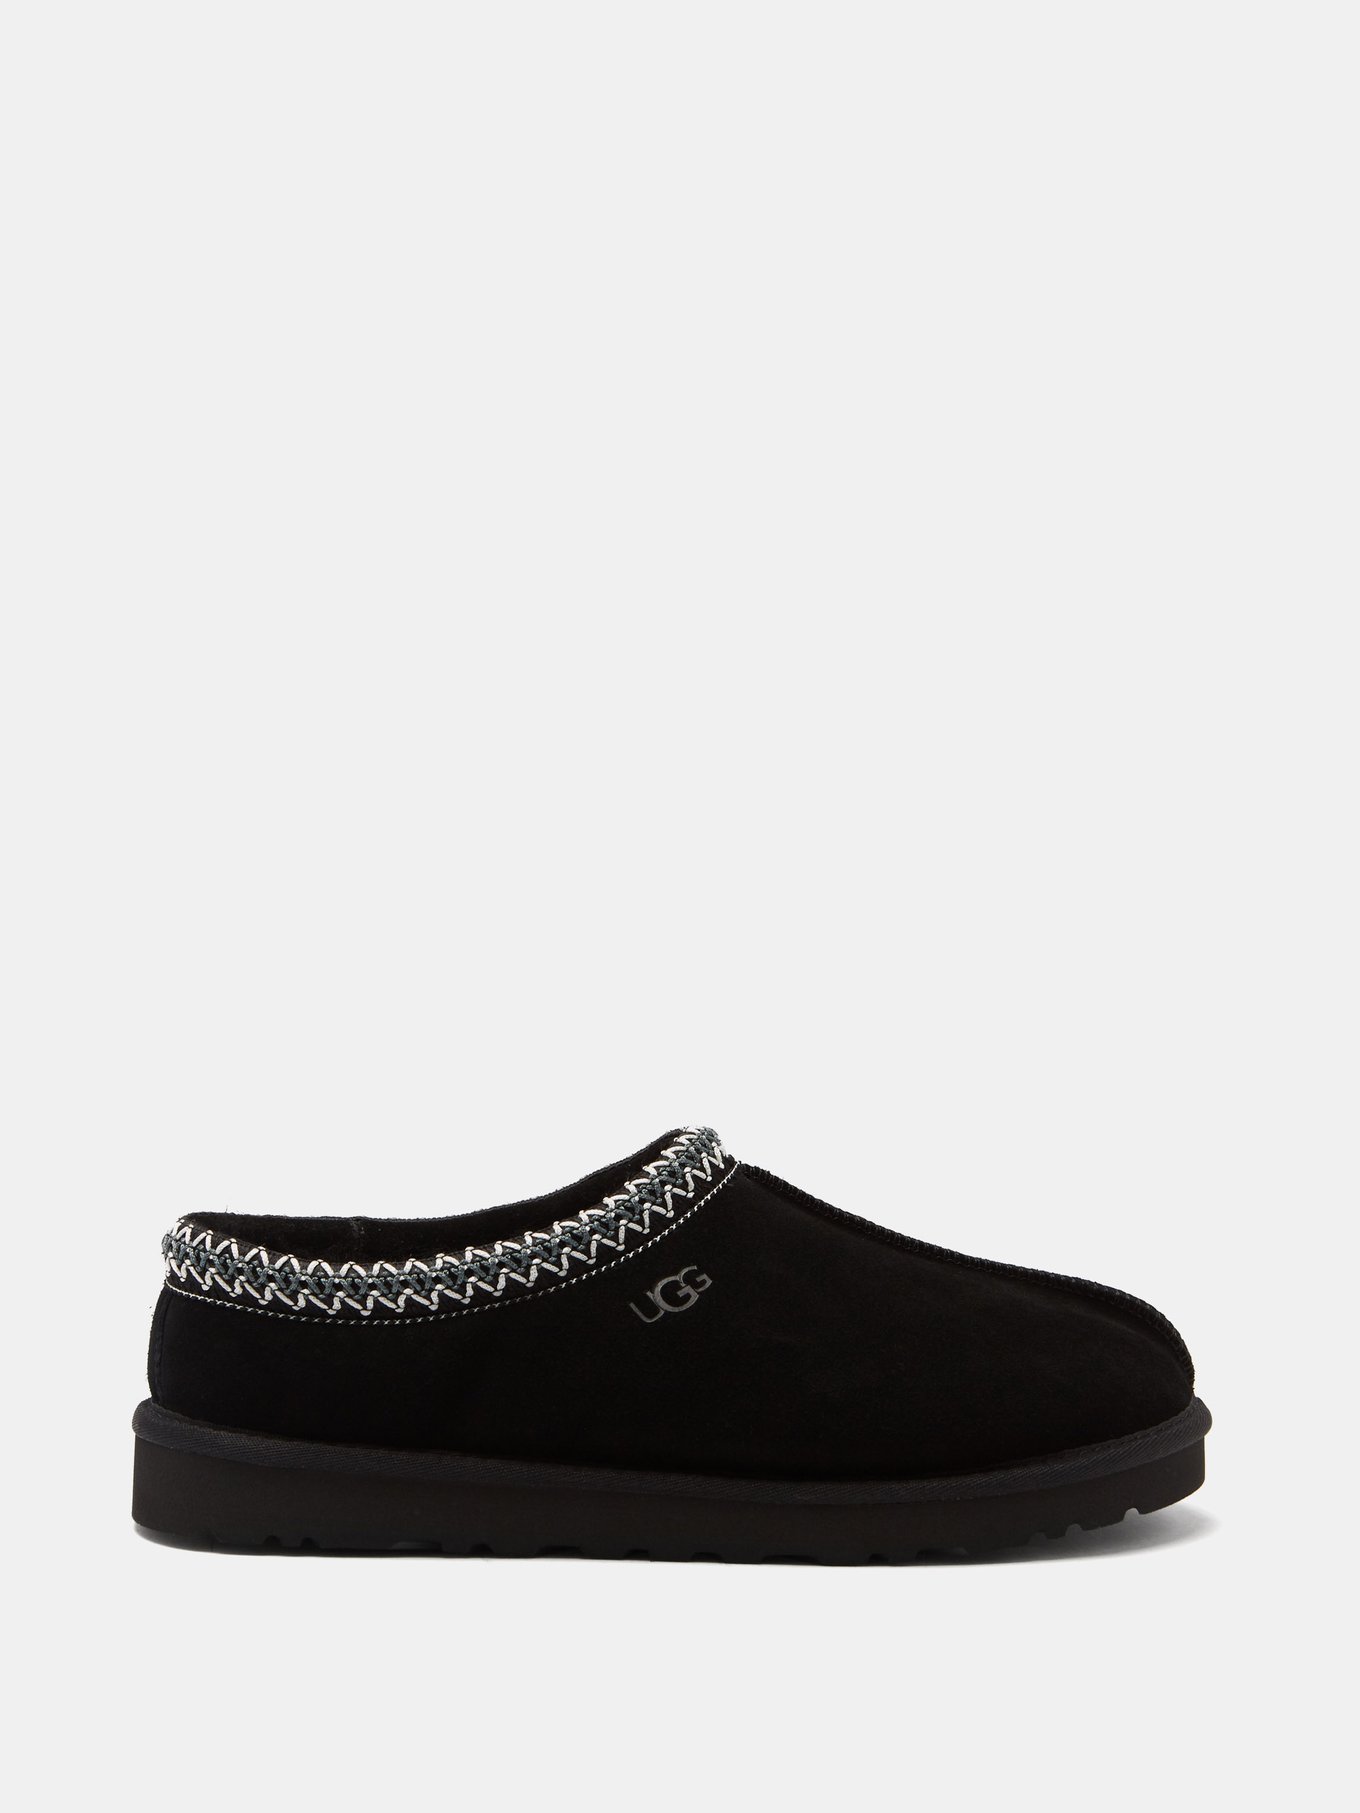 UGG tasman slippers in black suede